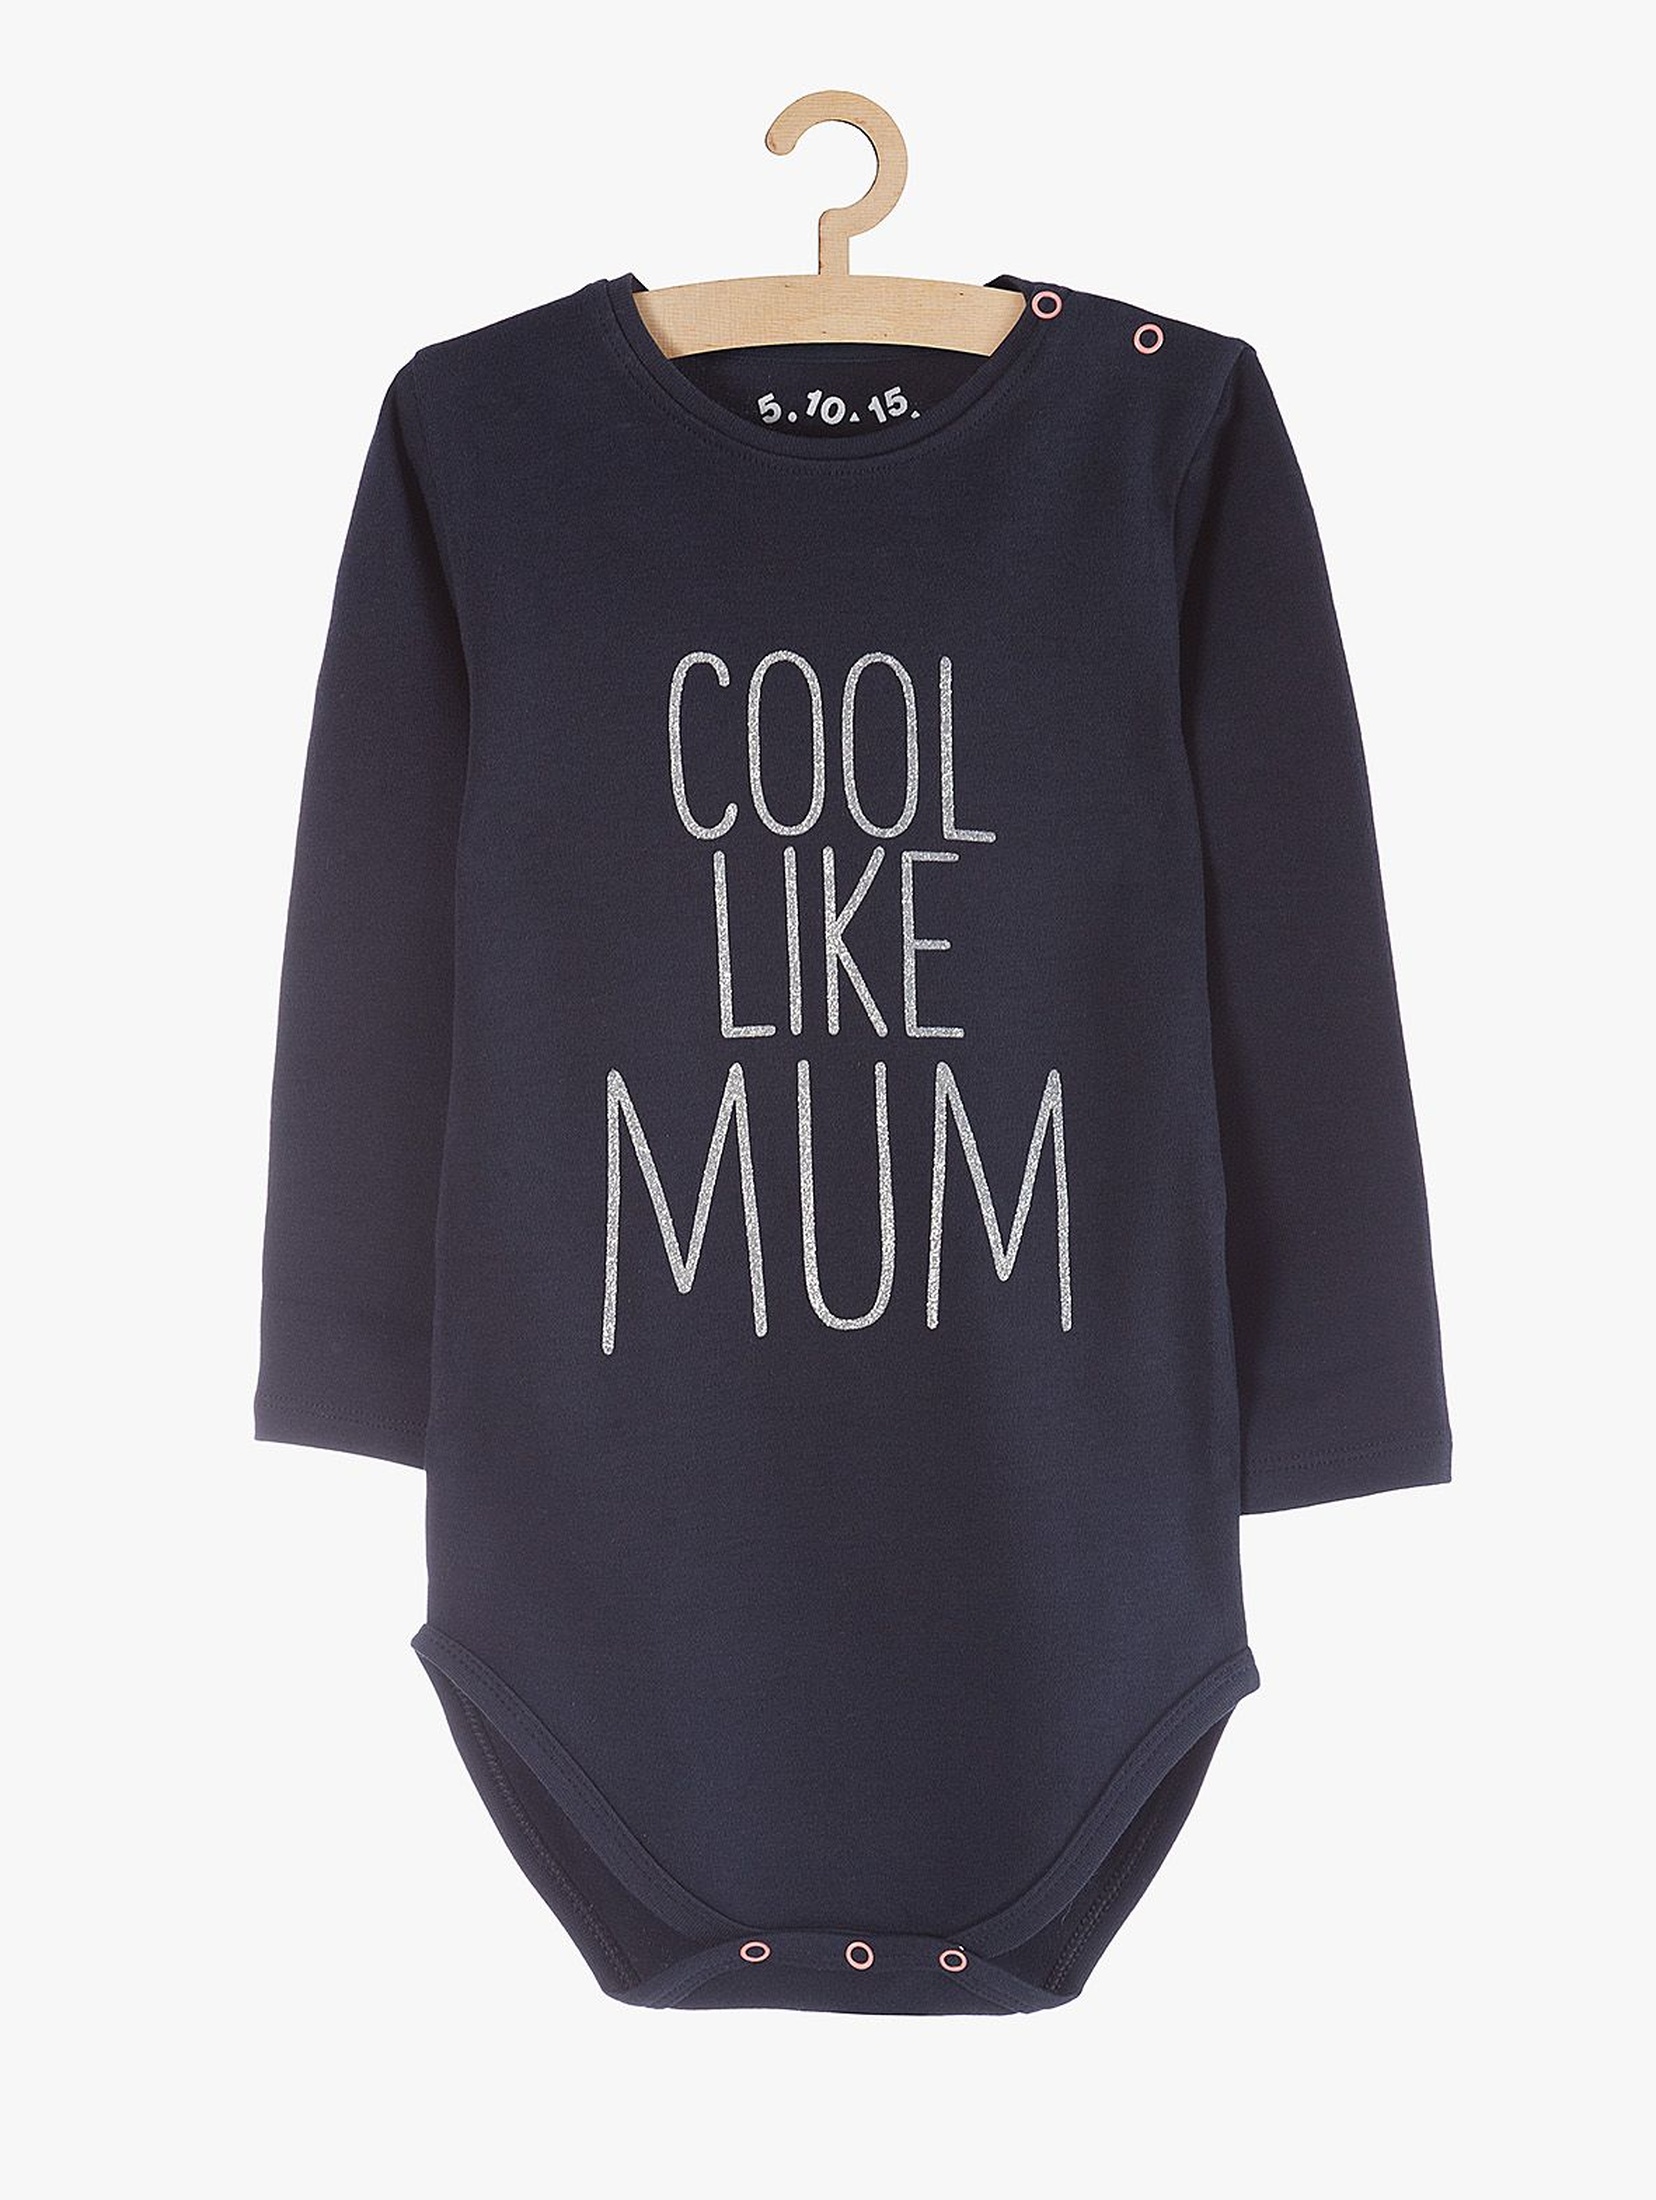 Body niemowlęce bawełniane z napisem "Cool like mum"